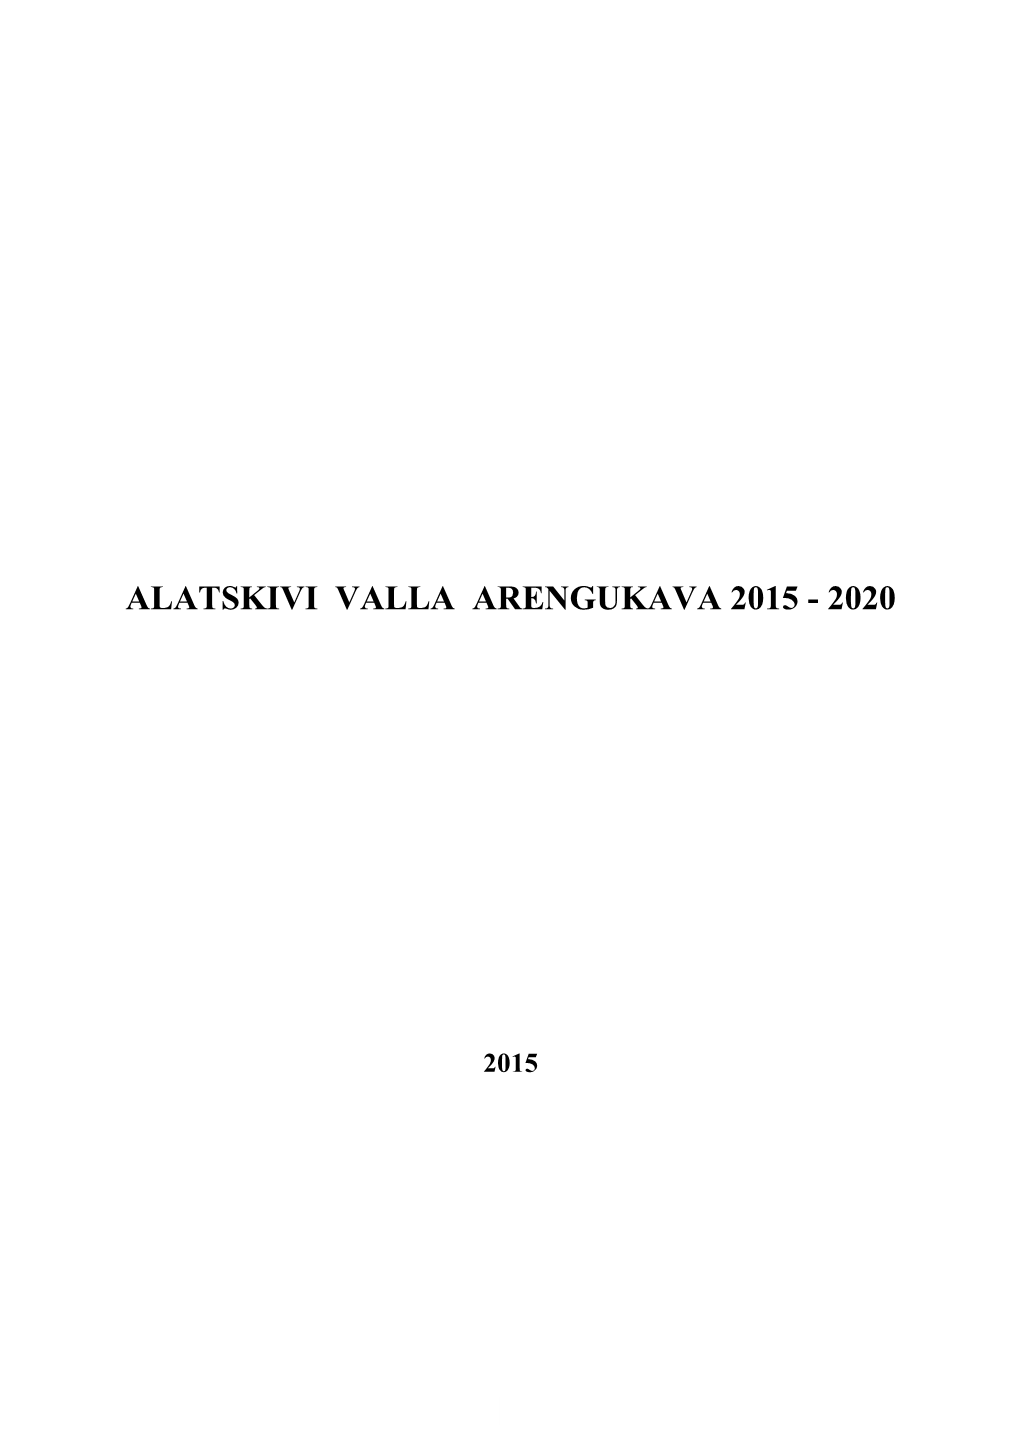 Alatskivi Valla Arengukava 2015 - 2020